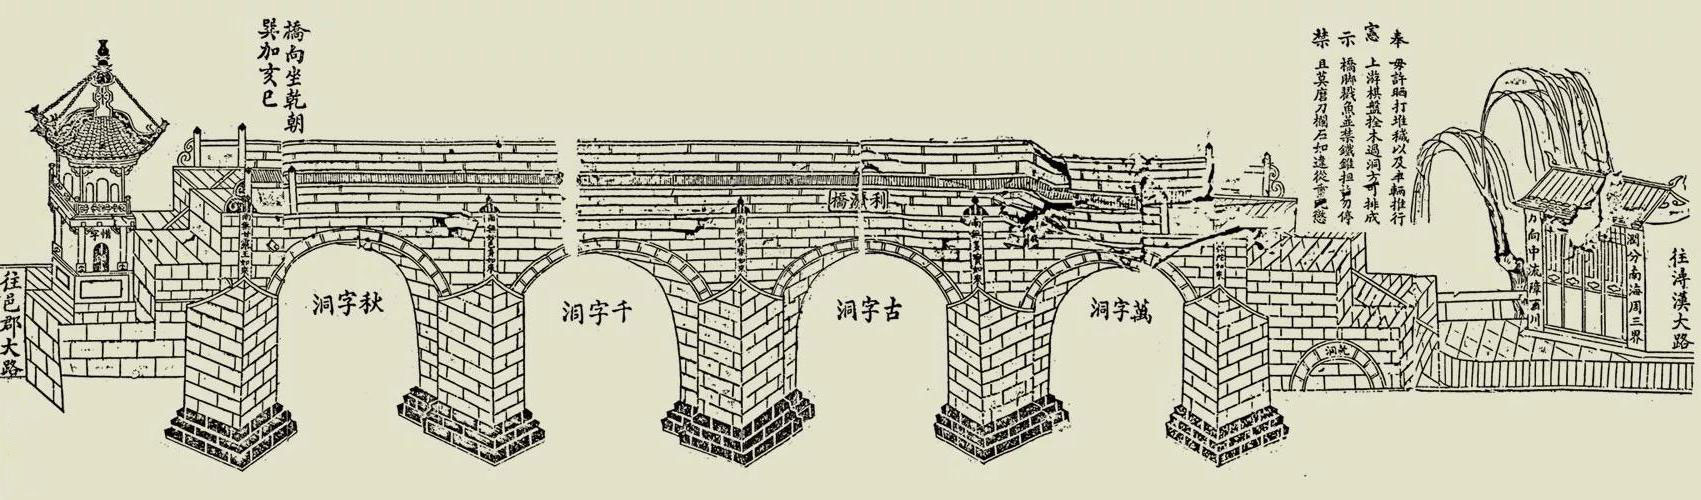 历口利济桥